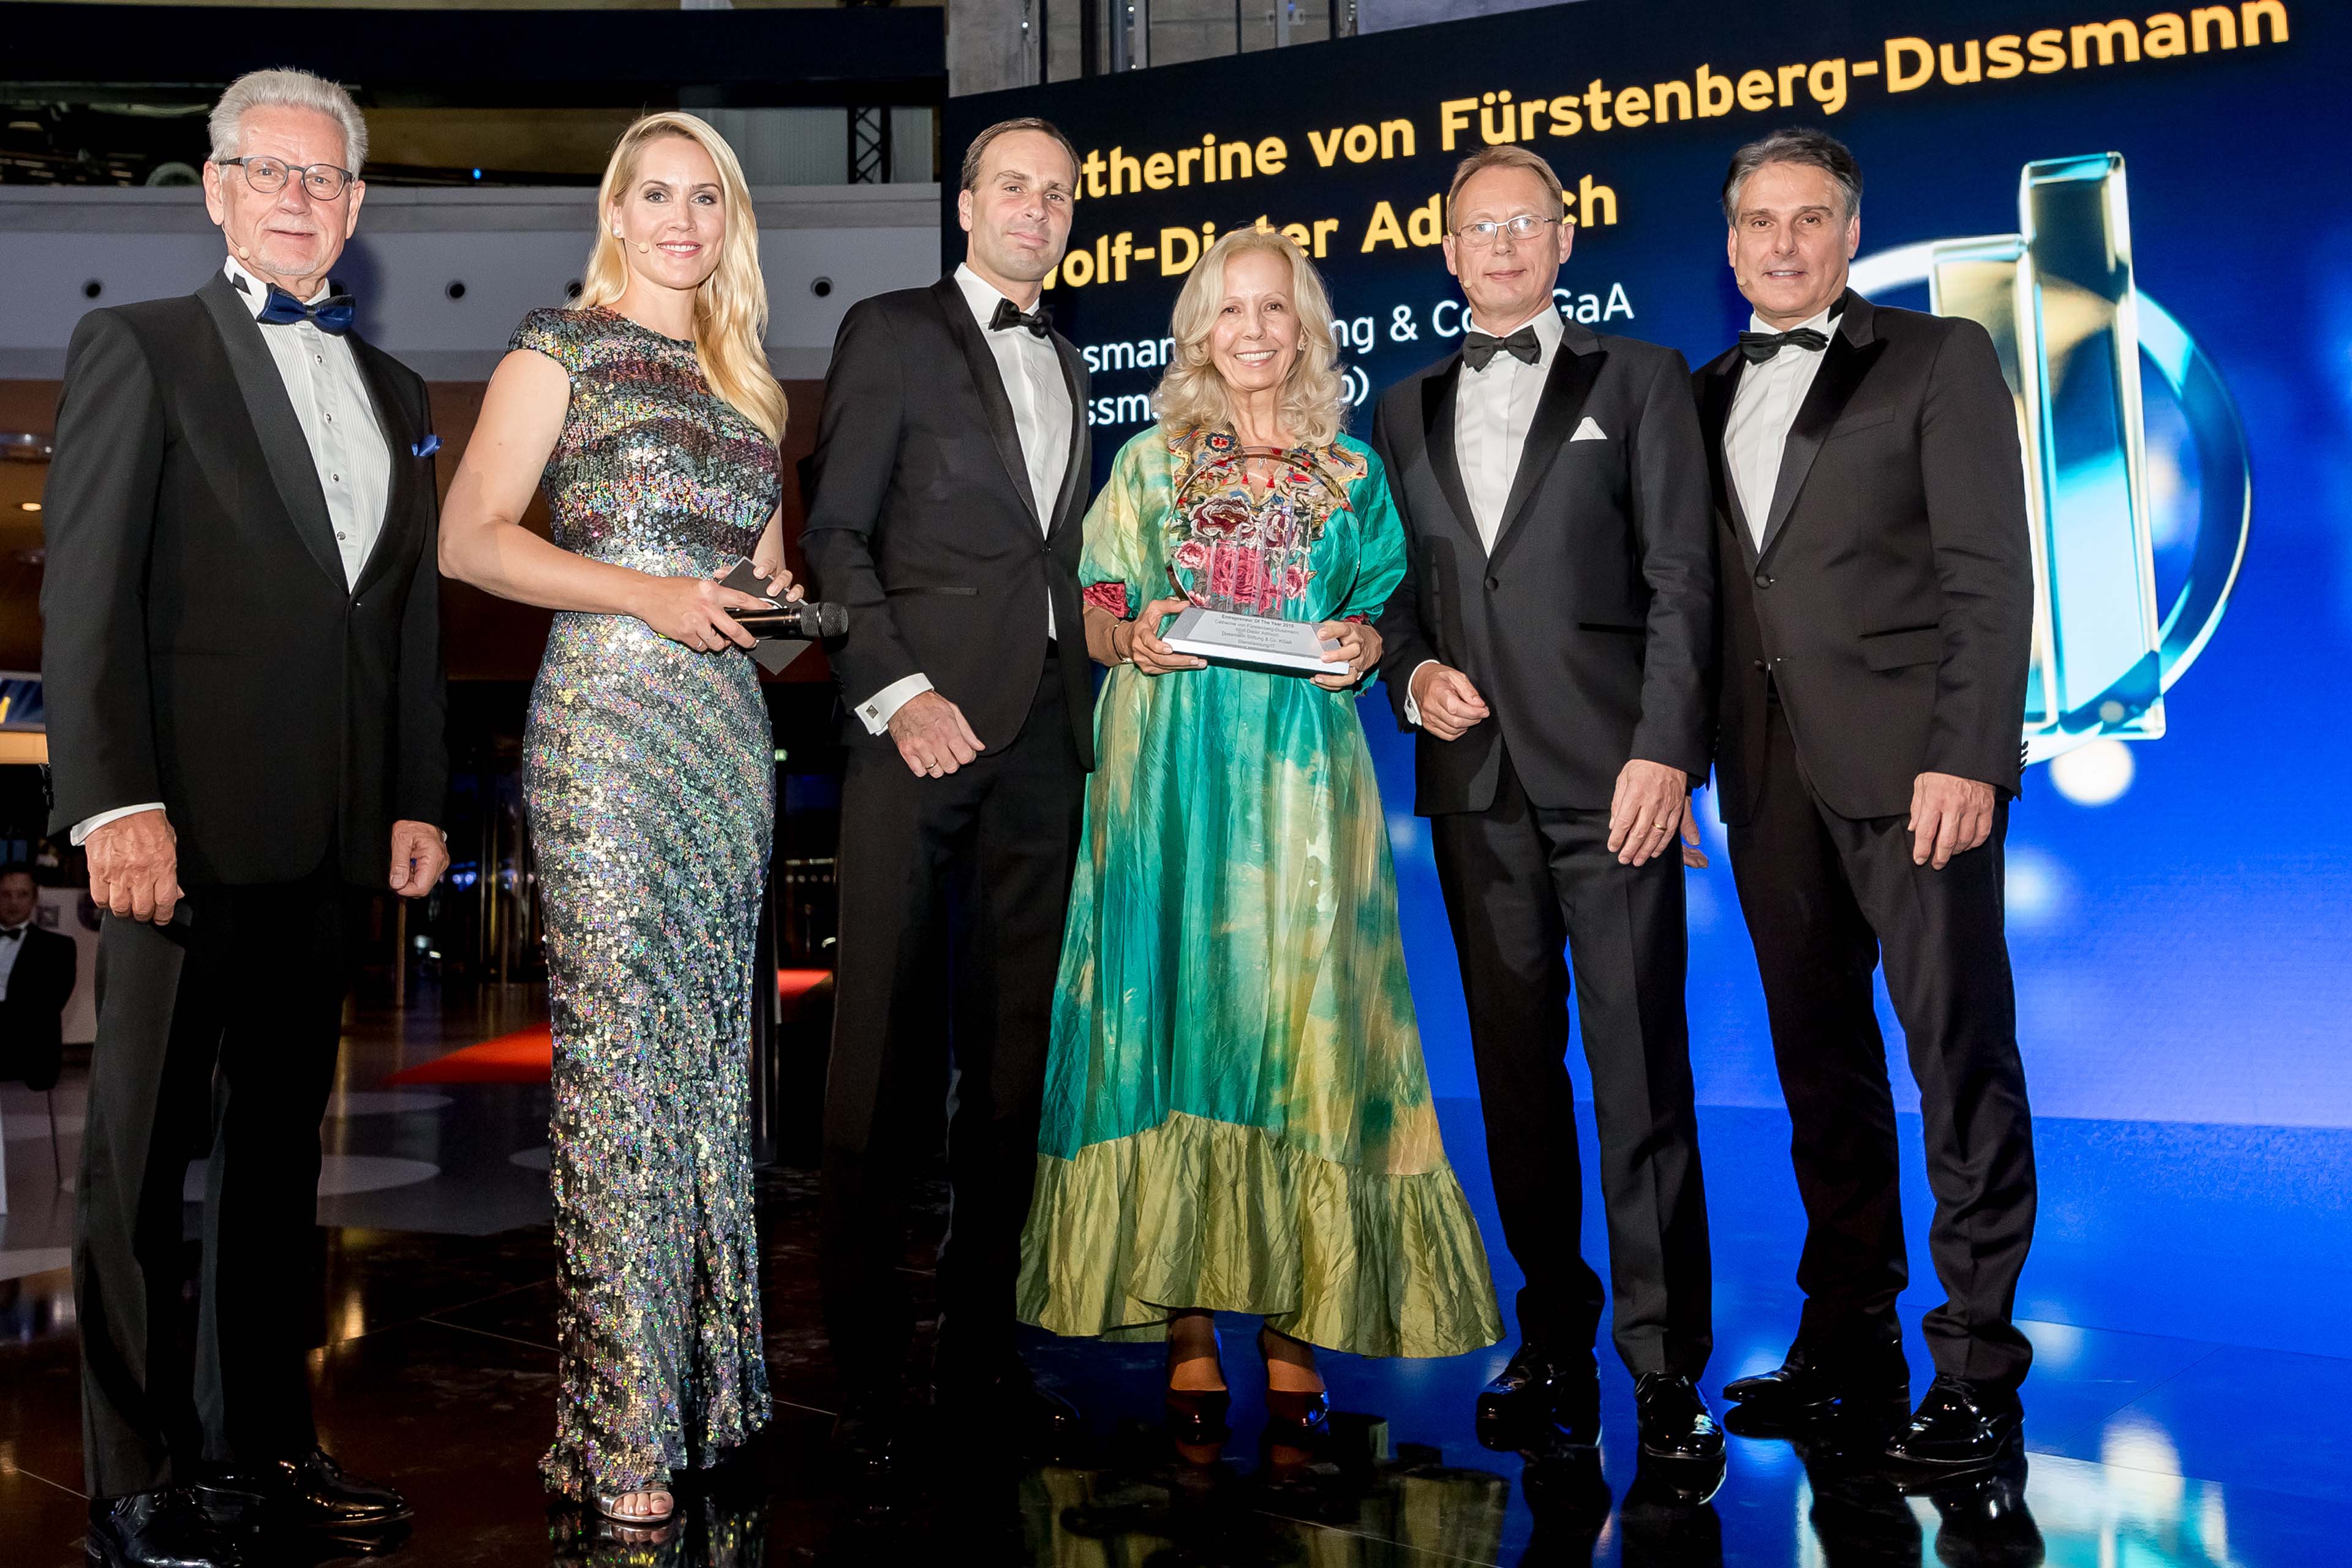 Manfred Wittenstein, Judith Rakers, Wolf-Dieter Adlhoch, Catherine von Fürstenberg-Dussmann, Roland Schubert, Michael Marbler